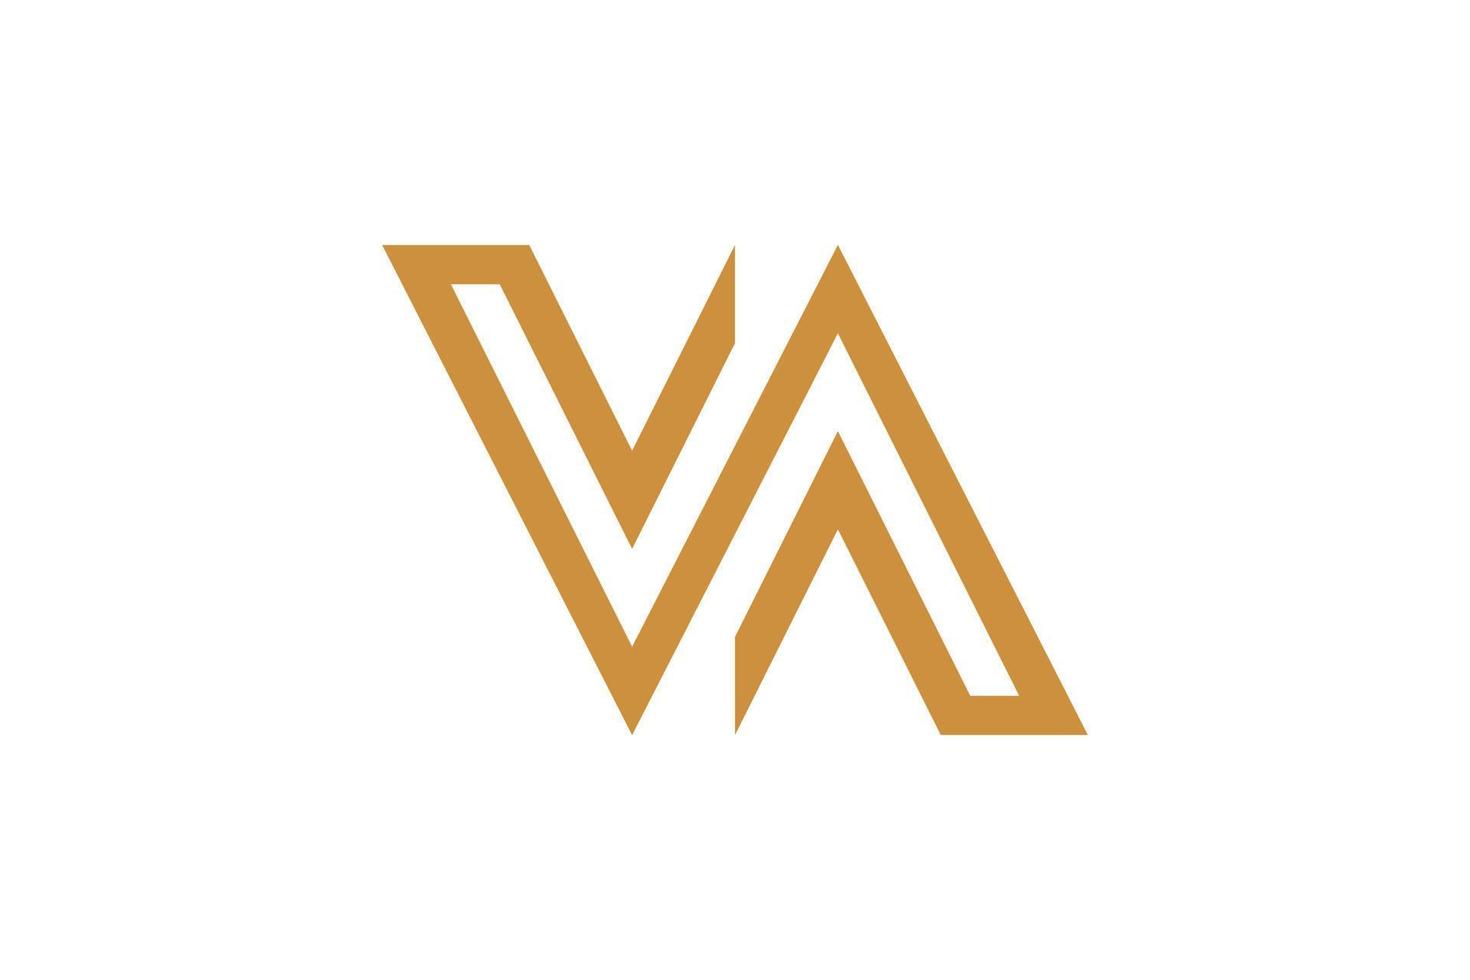 Letter W Monoline Logo vector